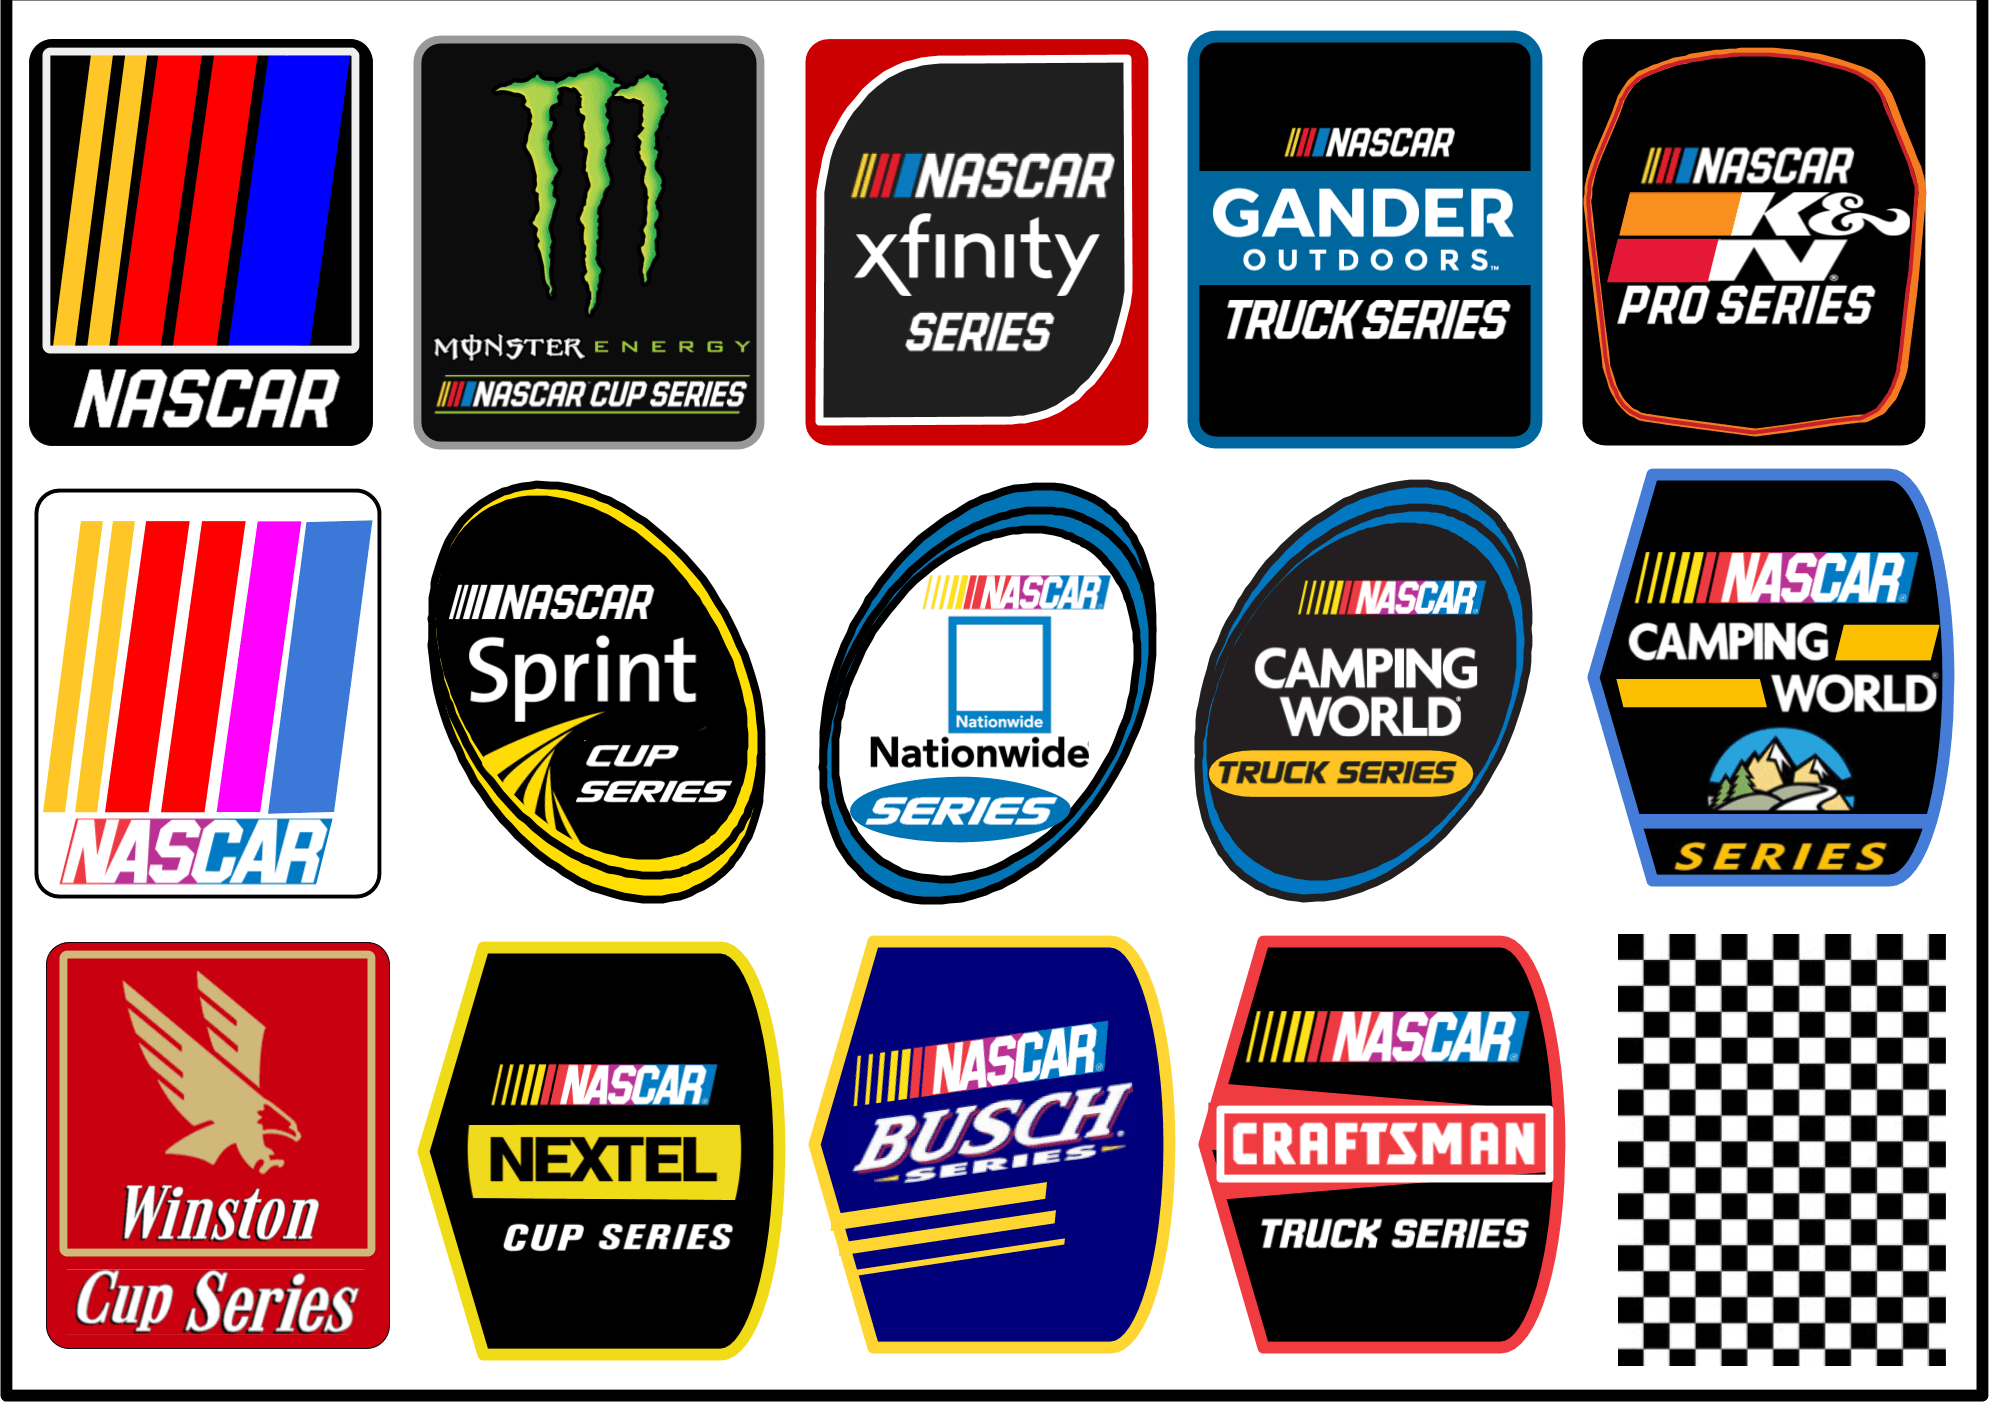 Nascar.com Logo - If NASCAR logos were vertical instead of horizontal